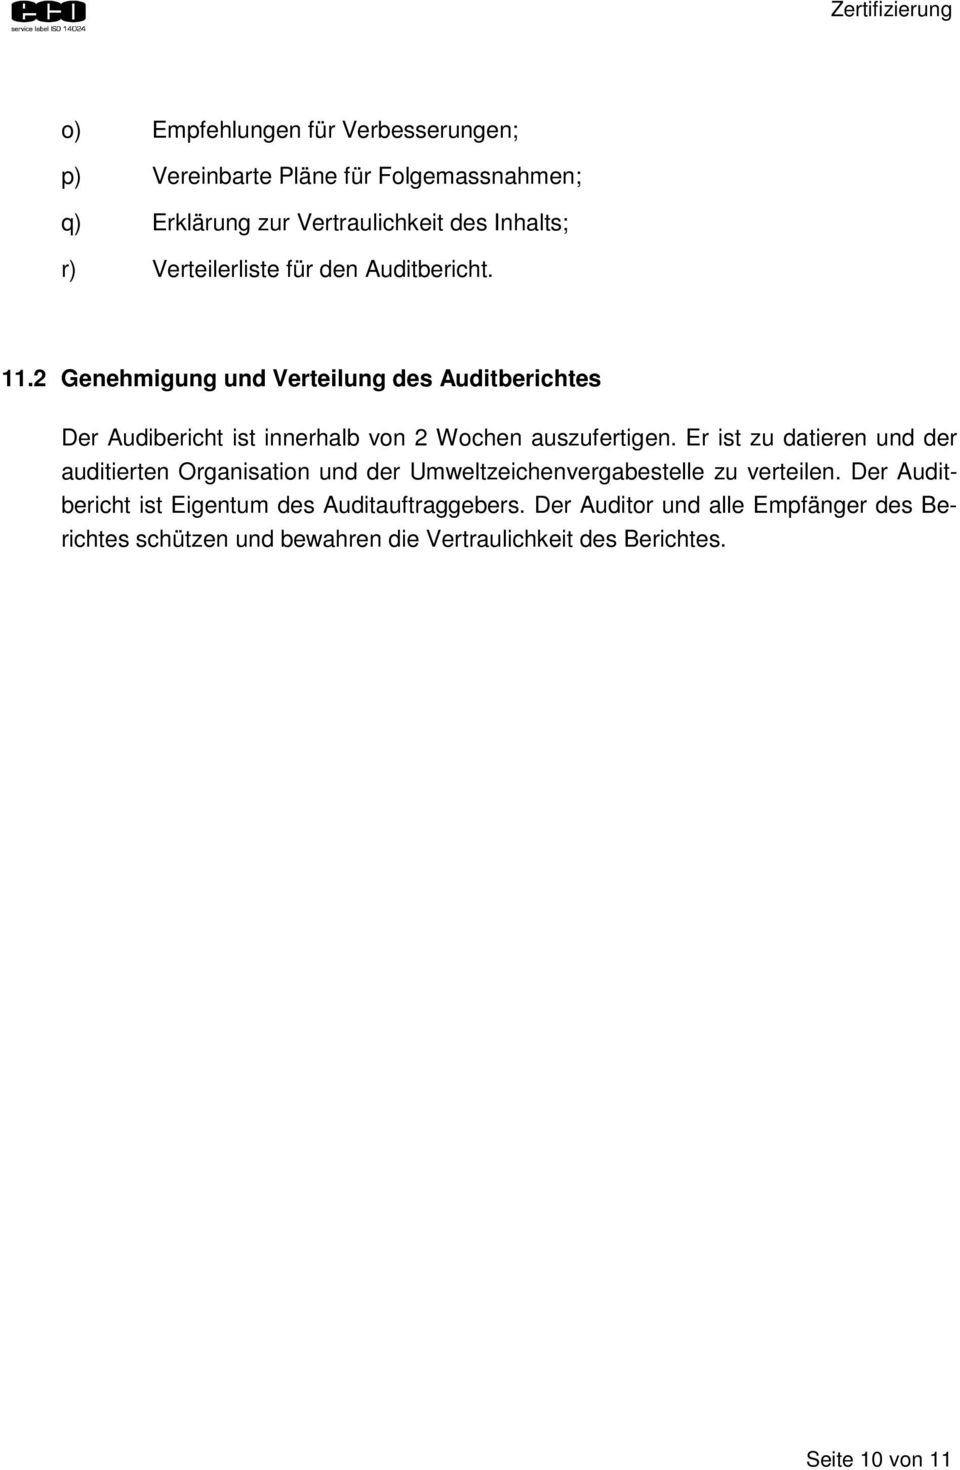 2 Genehmigung und Verteilung des Auditberichtes Der Audibericht ist innerhalb von 2 Wochen auszufertigen.